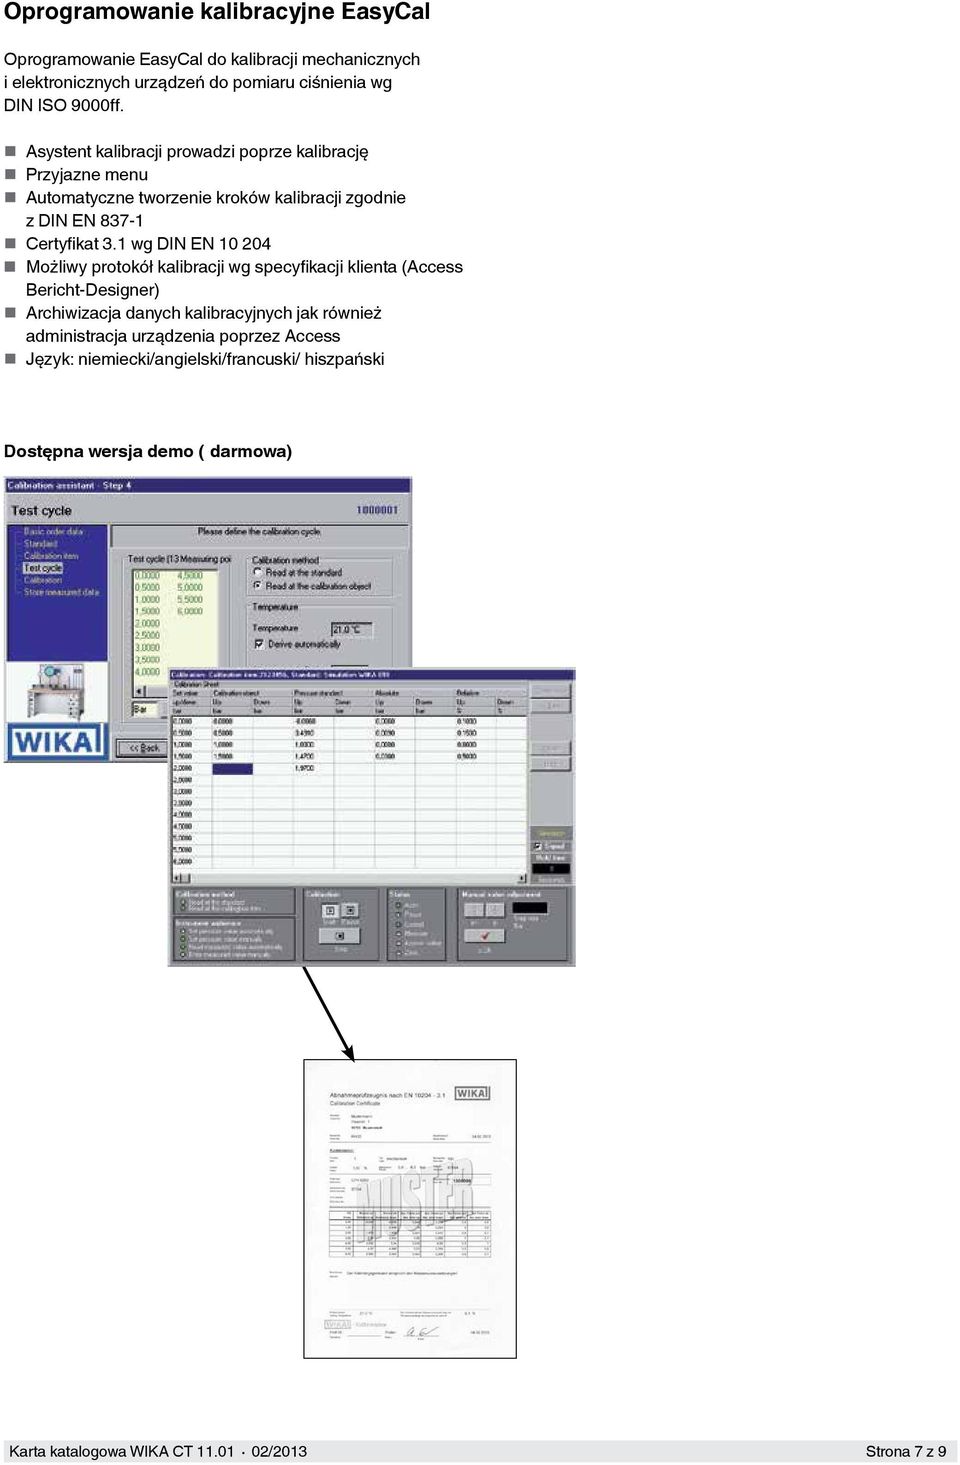 Asystent kalibracji prowadzi poprze kalibrację Przyjazne menu Automatyczne tworzenie kroków kalibracji zgodnie z DIN EN 837-1 Certyfikat 3.